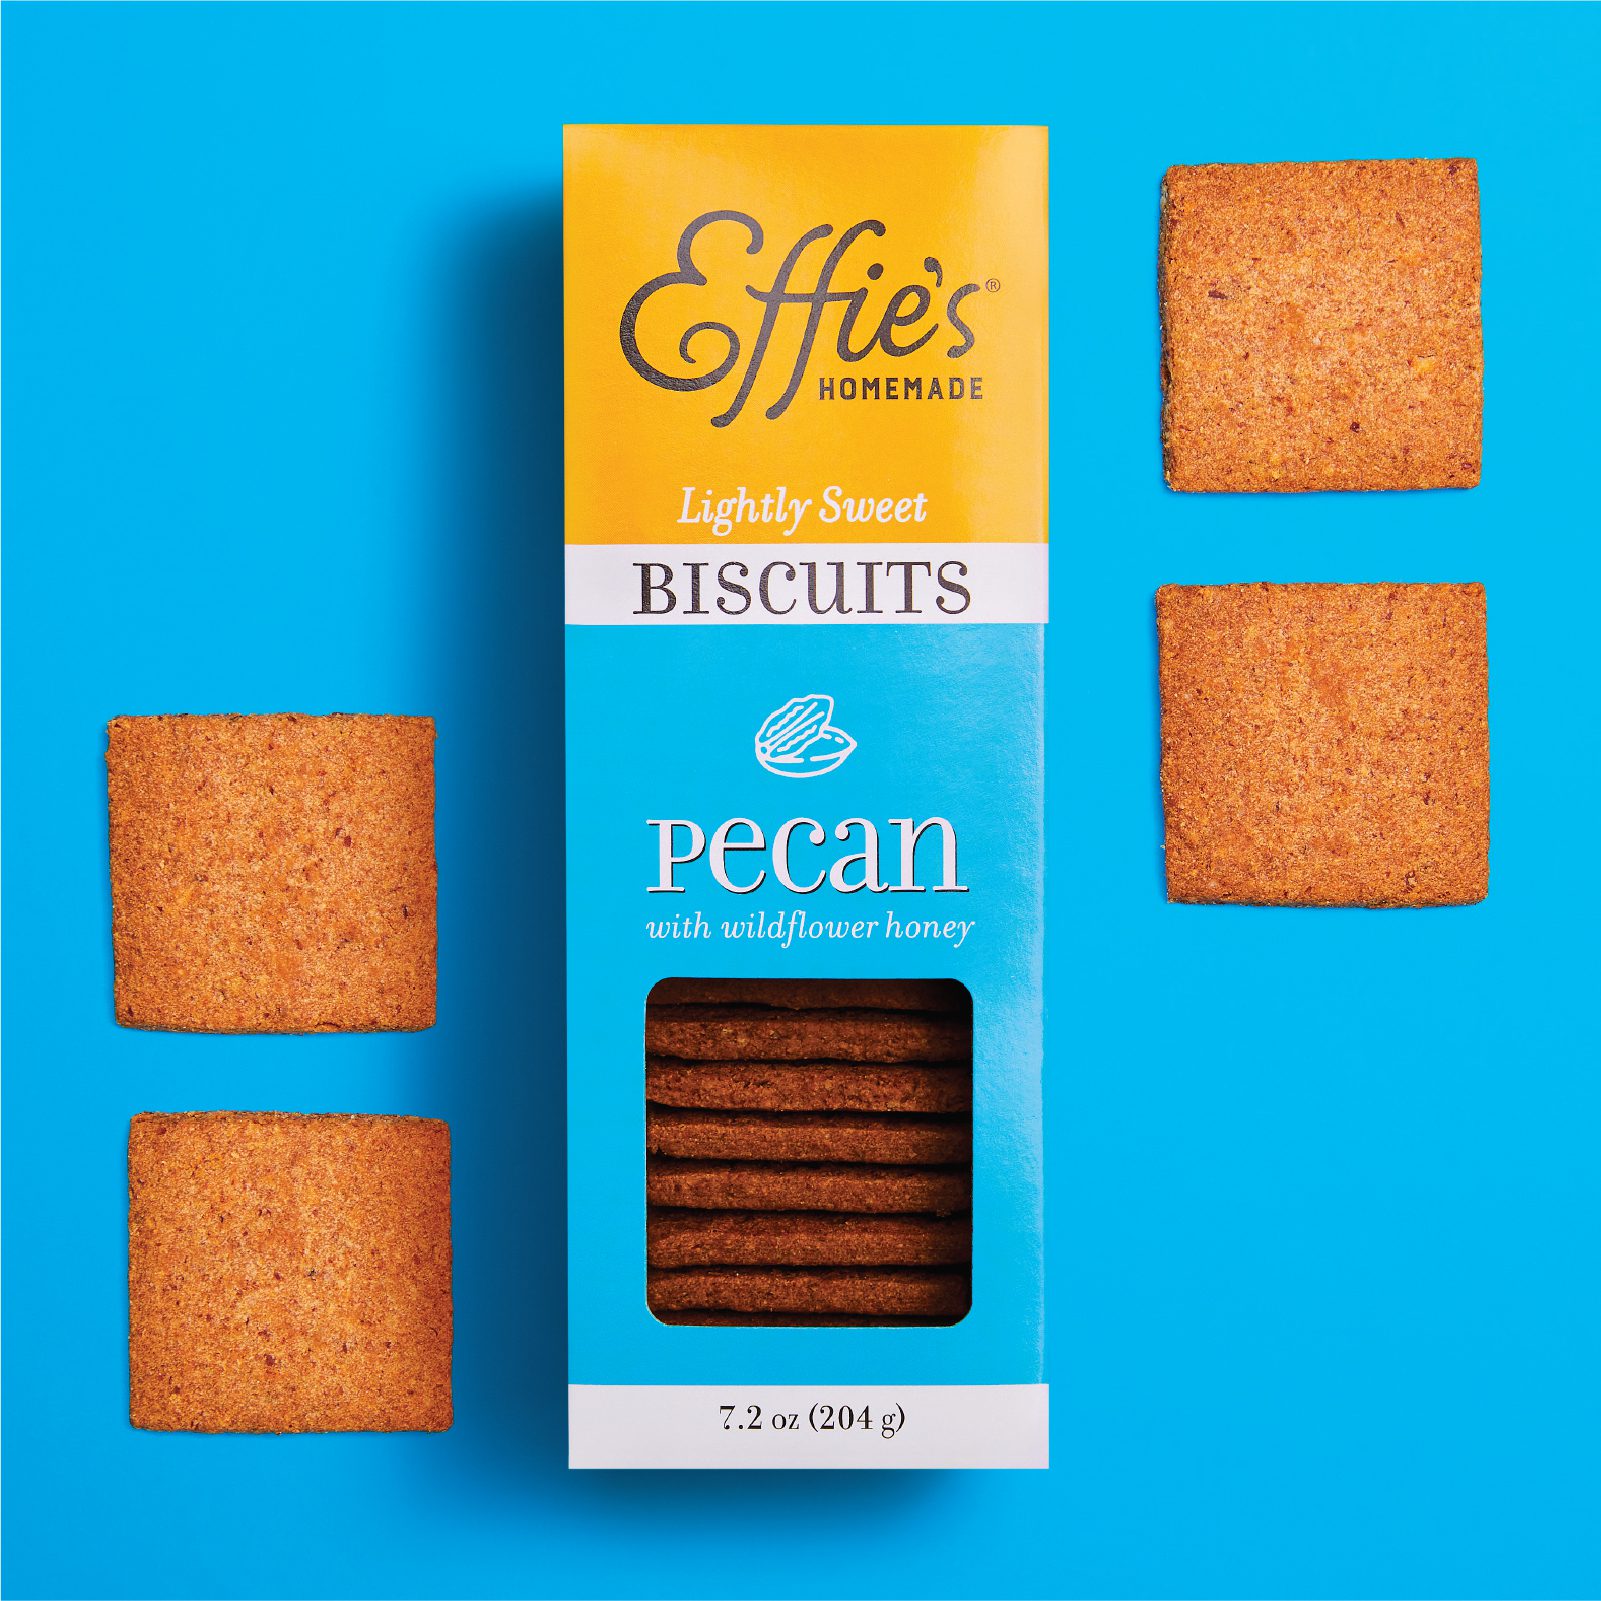 effies pecan biscuits box design